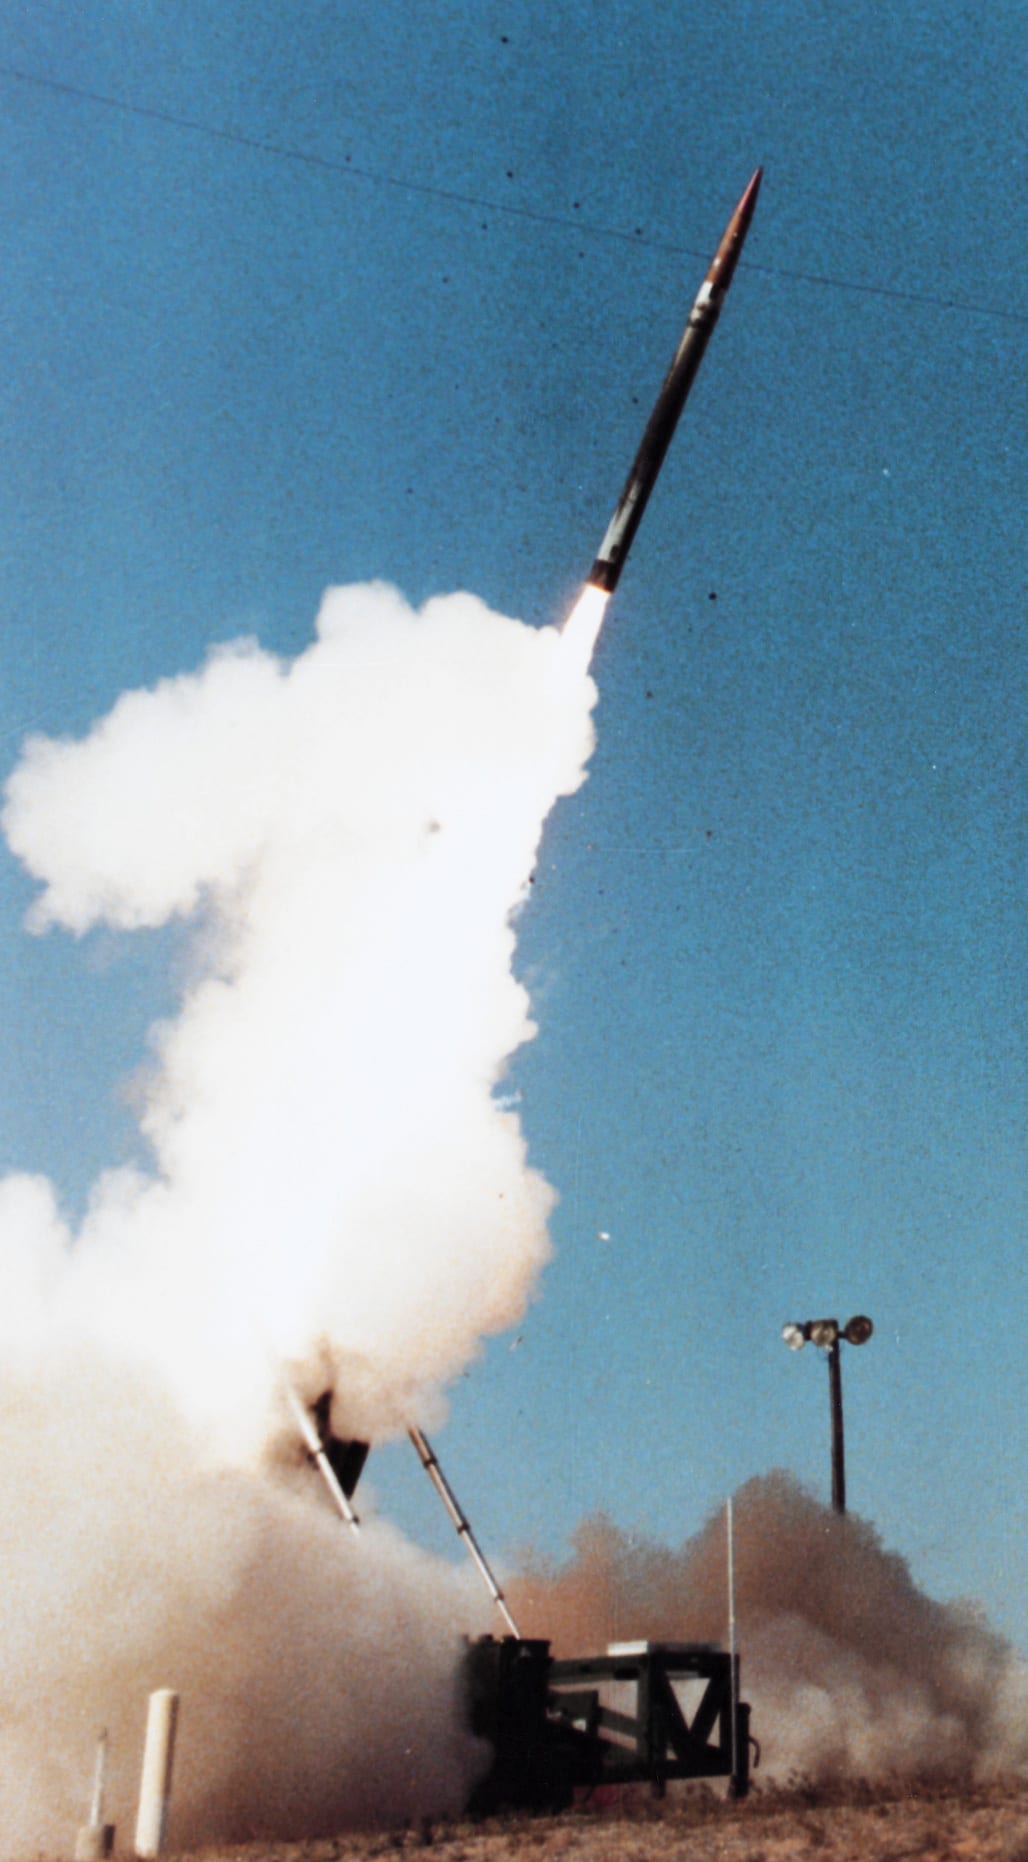 صورة ارشيفية لصاروخ بمنظومة "ثاد"